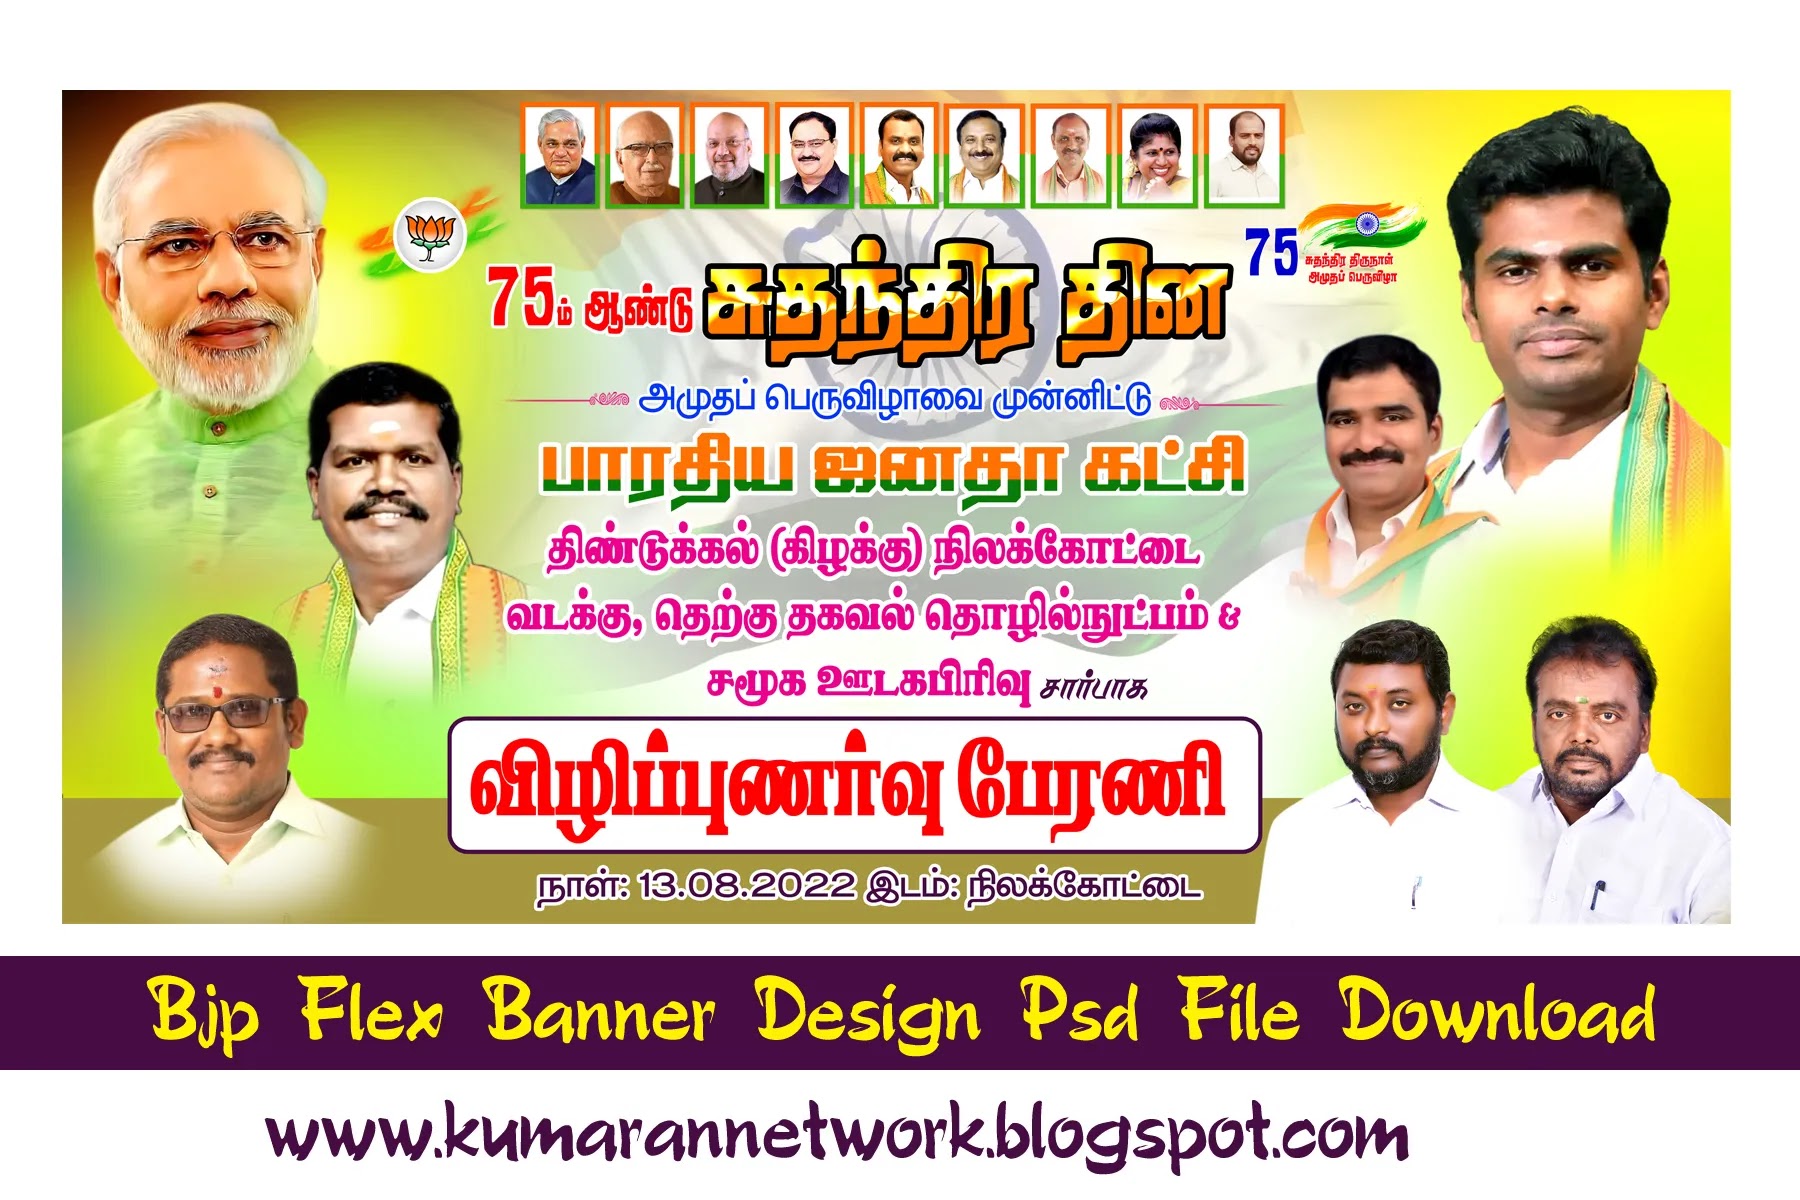 Bjp Flex Banner Design Psd File Free Download - Kumaran Network